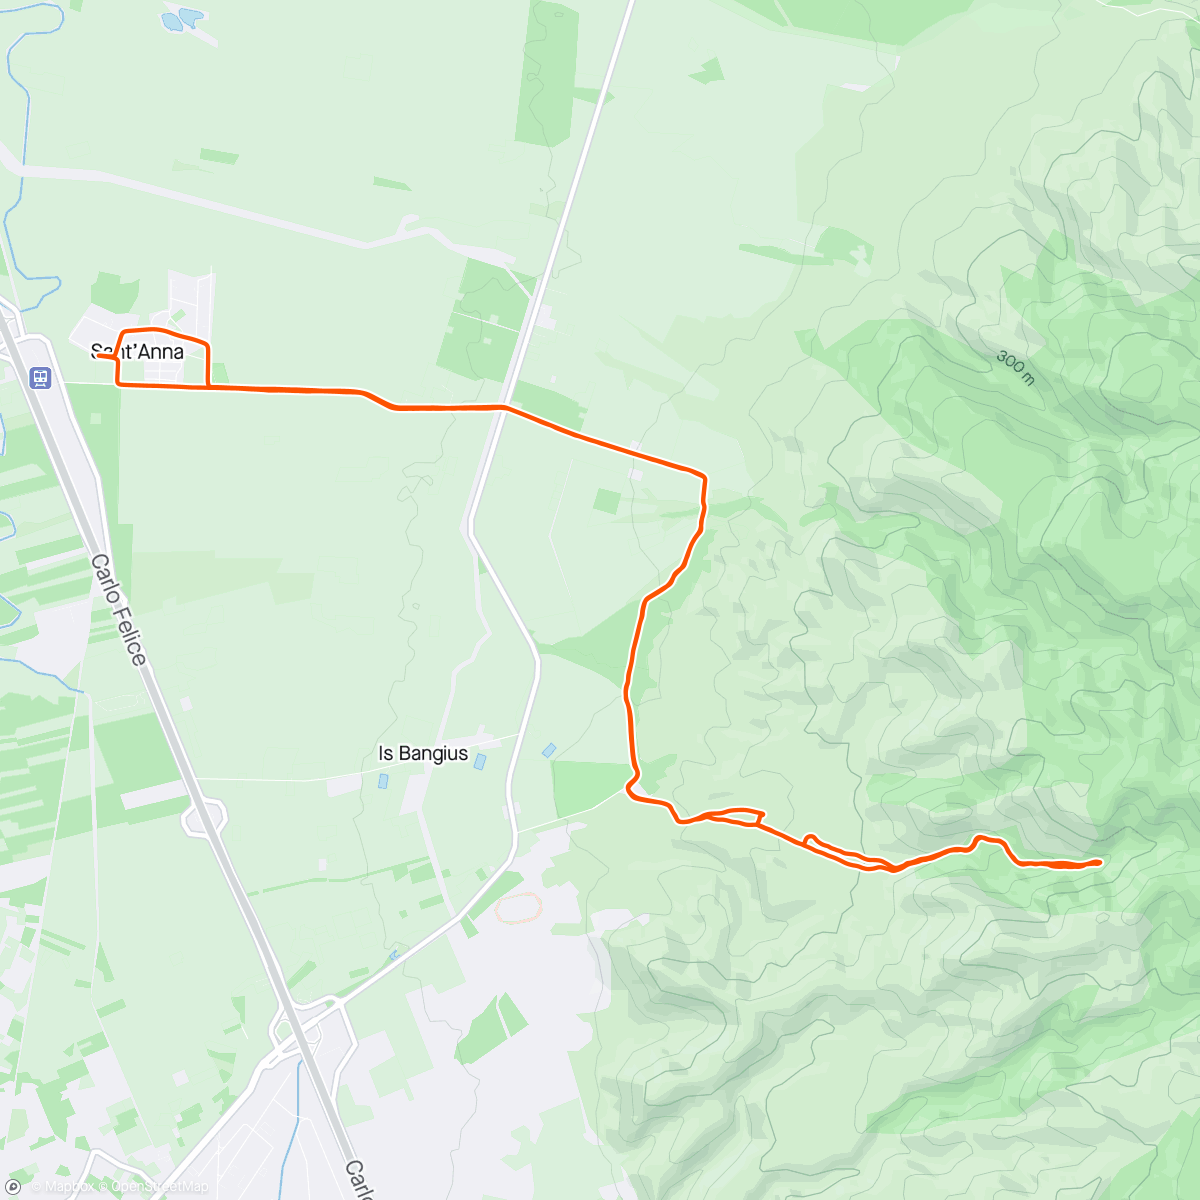 Mappa dell'attività Sessione di mountain biking serale